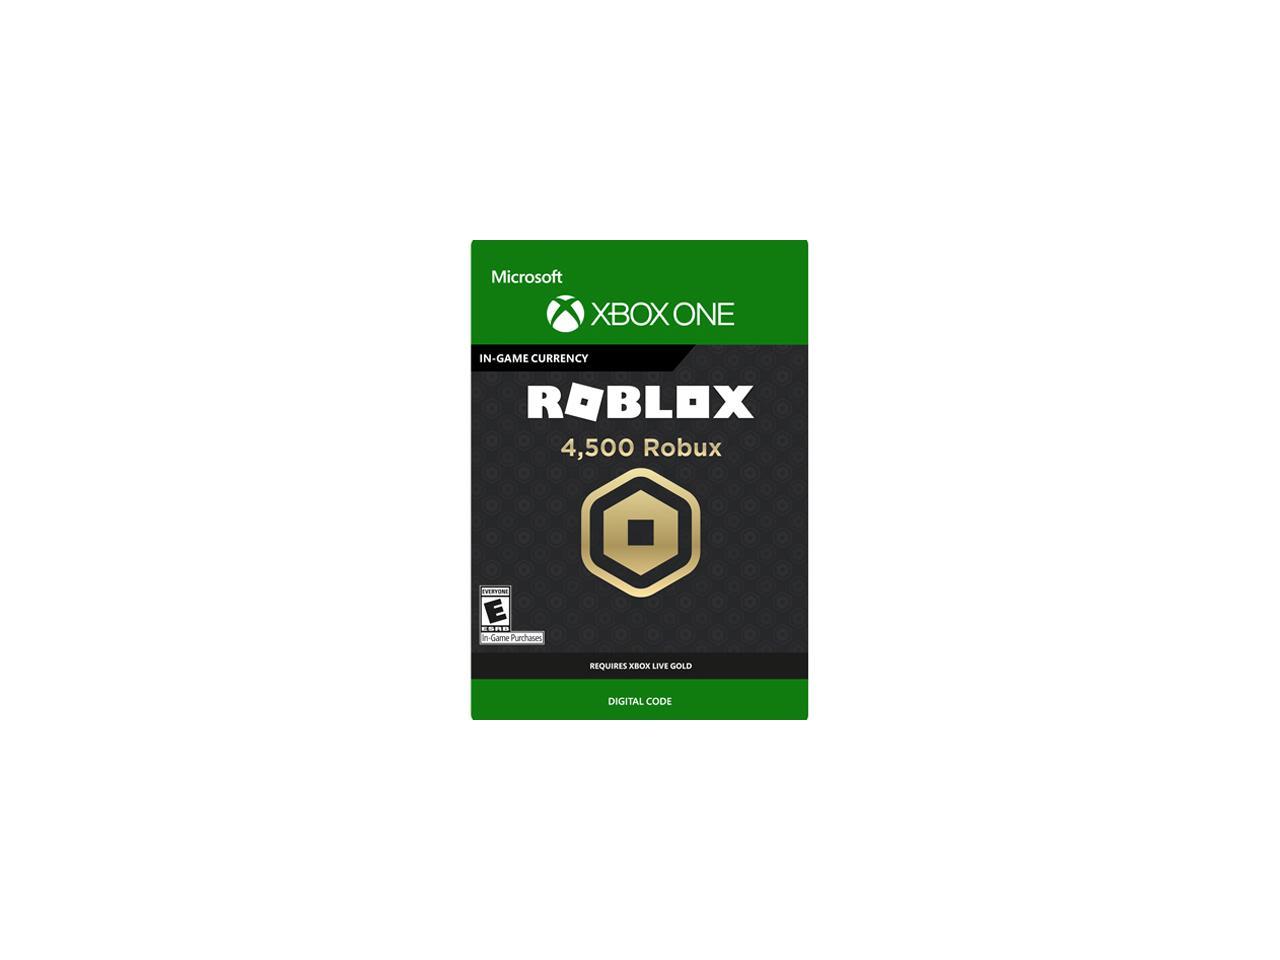 4 500 Robux For Xbox One Digital Code Newegg Com - 4500 robux for xbox one digital code